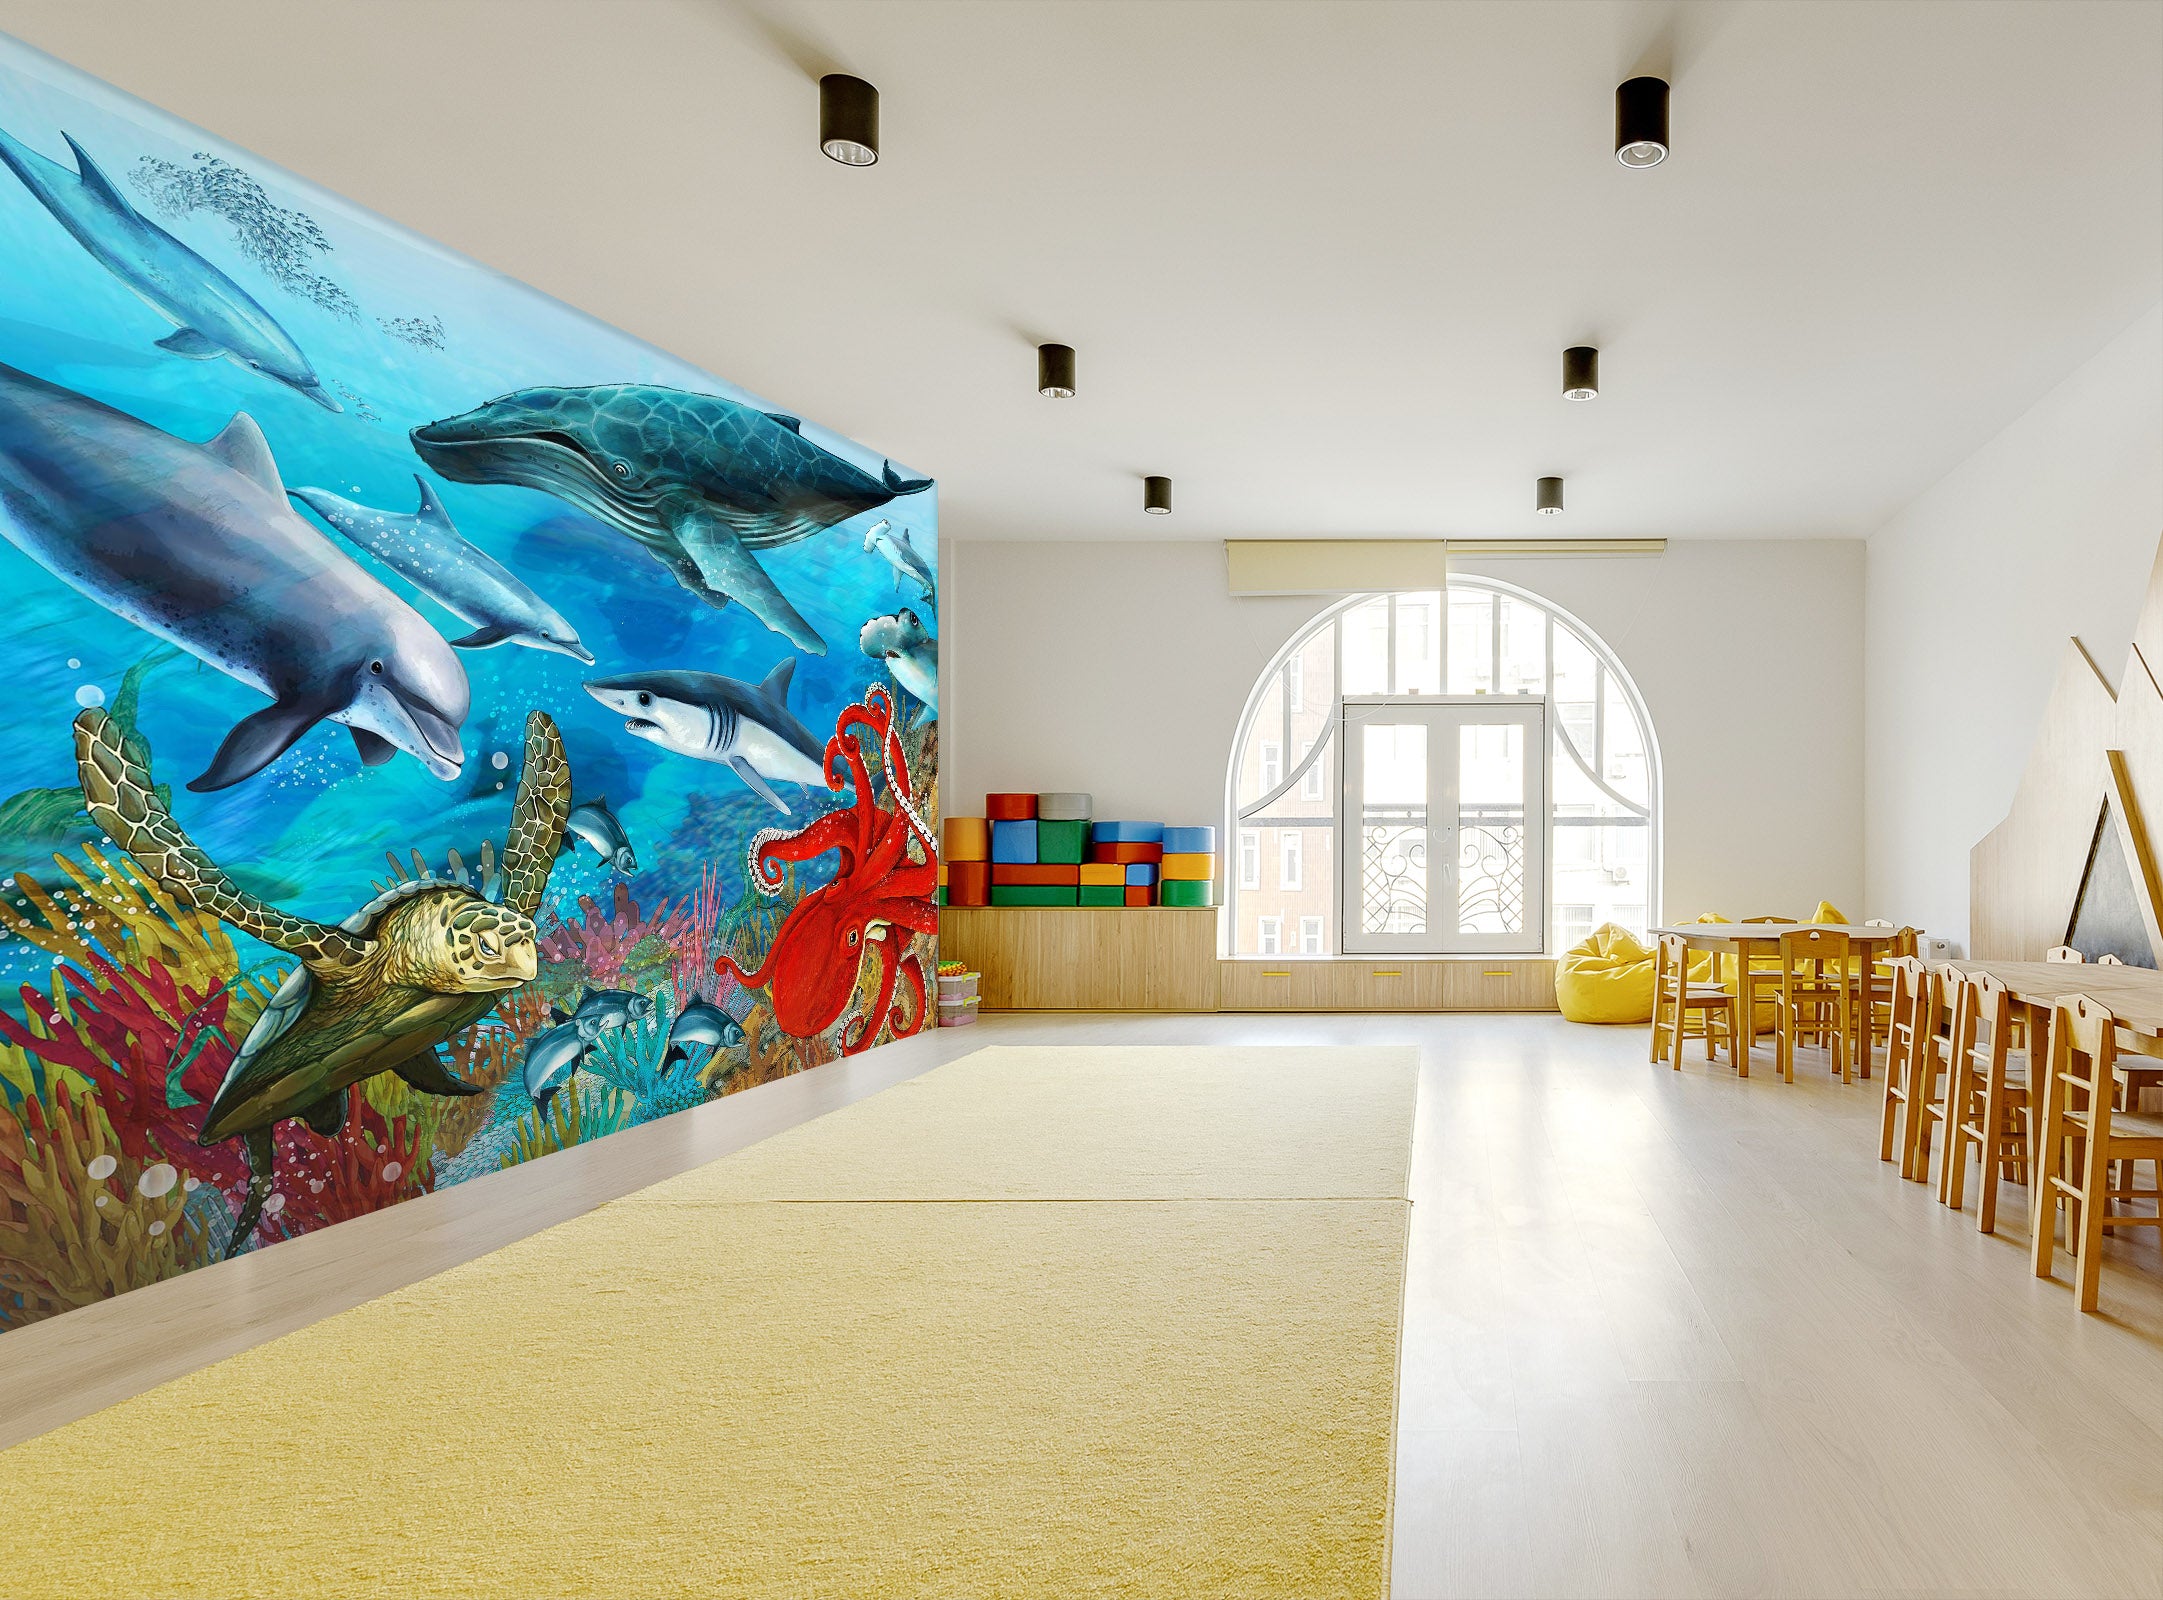 3D Dolphin Shark Turtle 278 Wall Murals